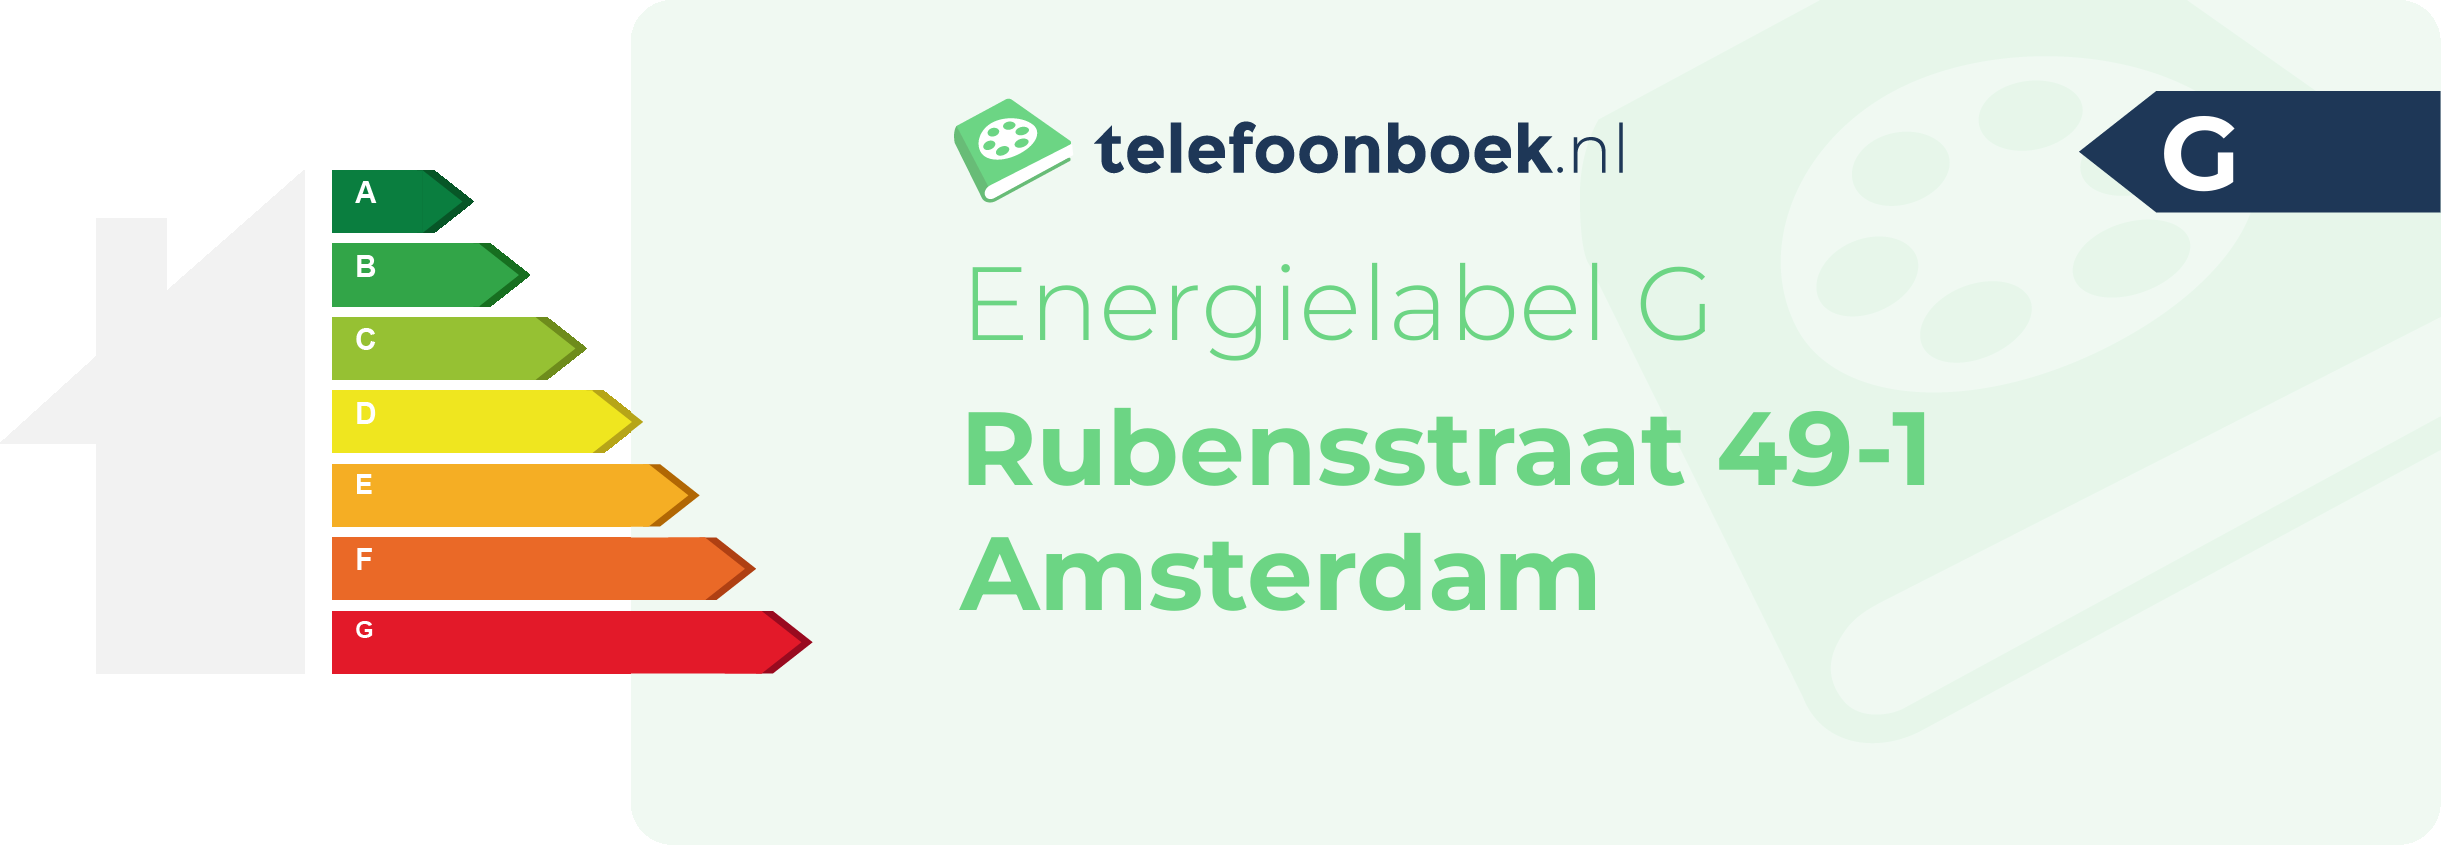 Energielabel Rubensstraat 49-1 Amsterdam